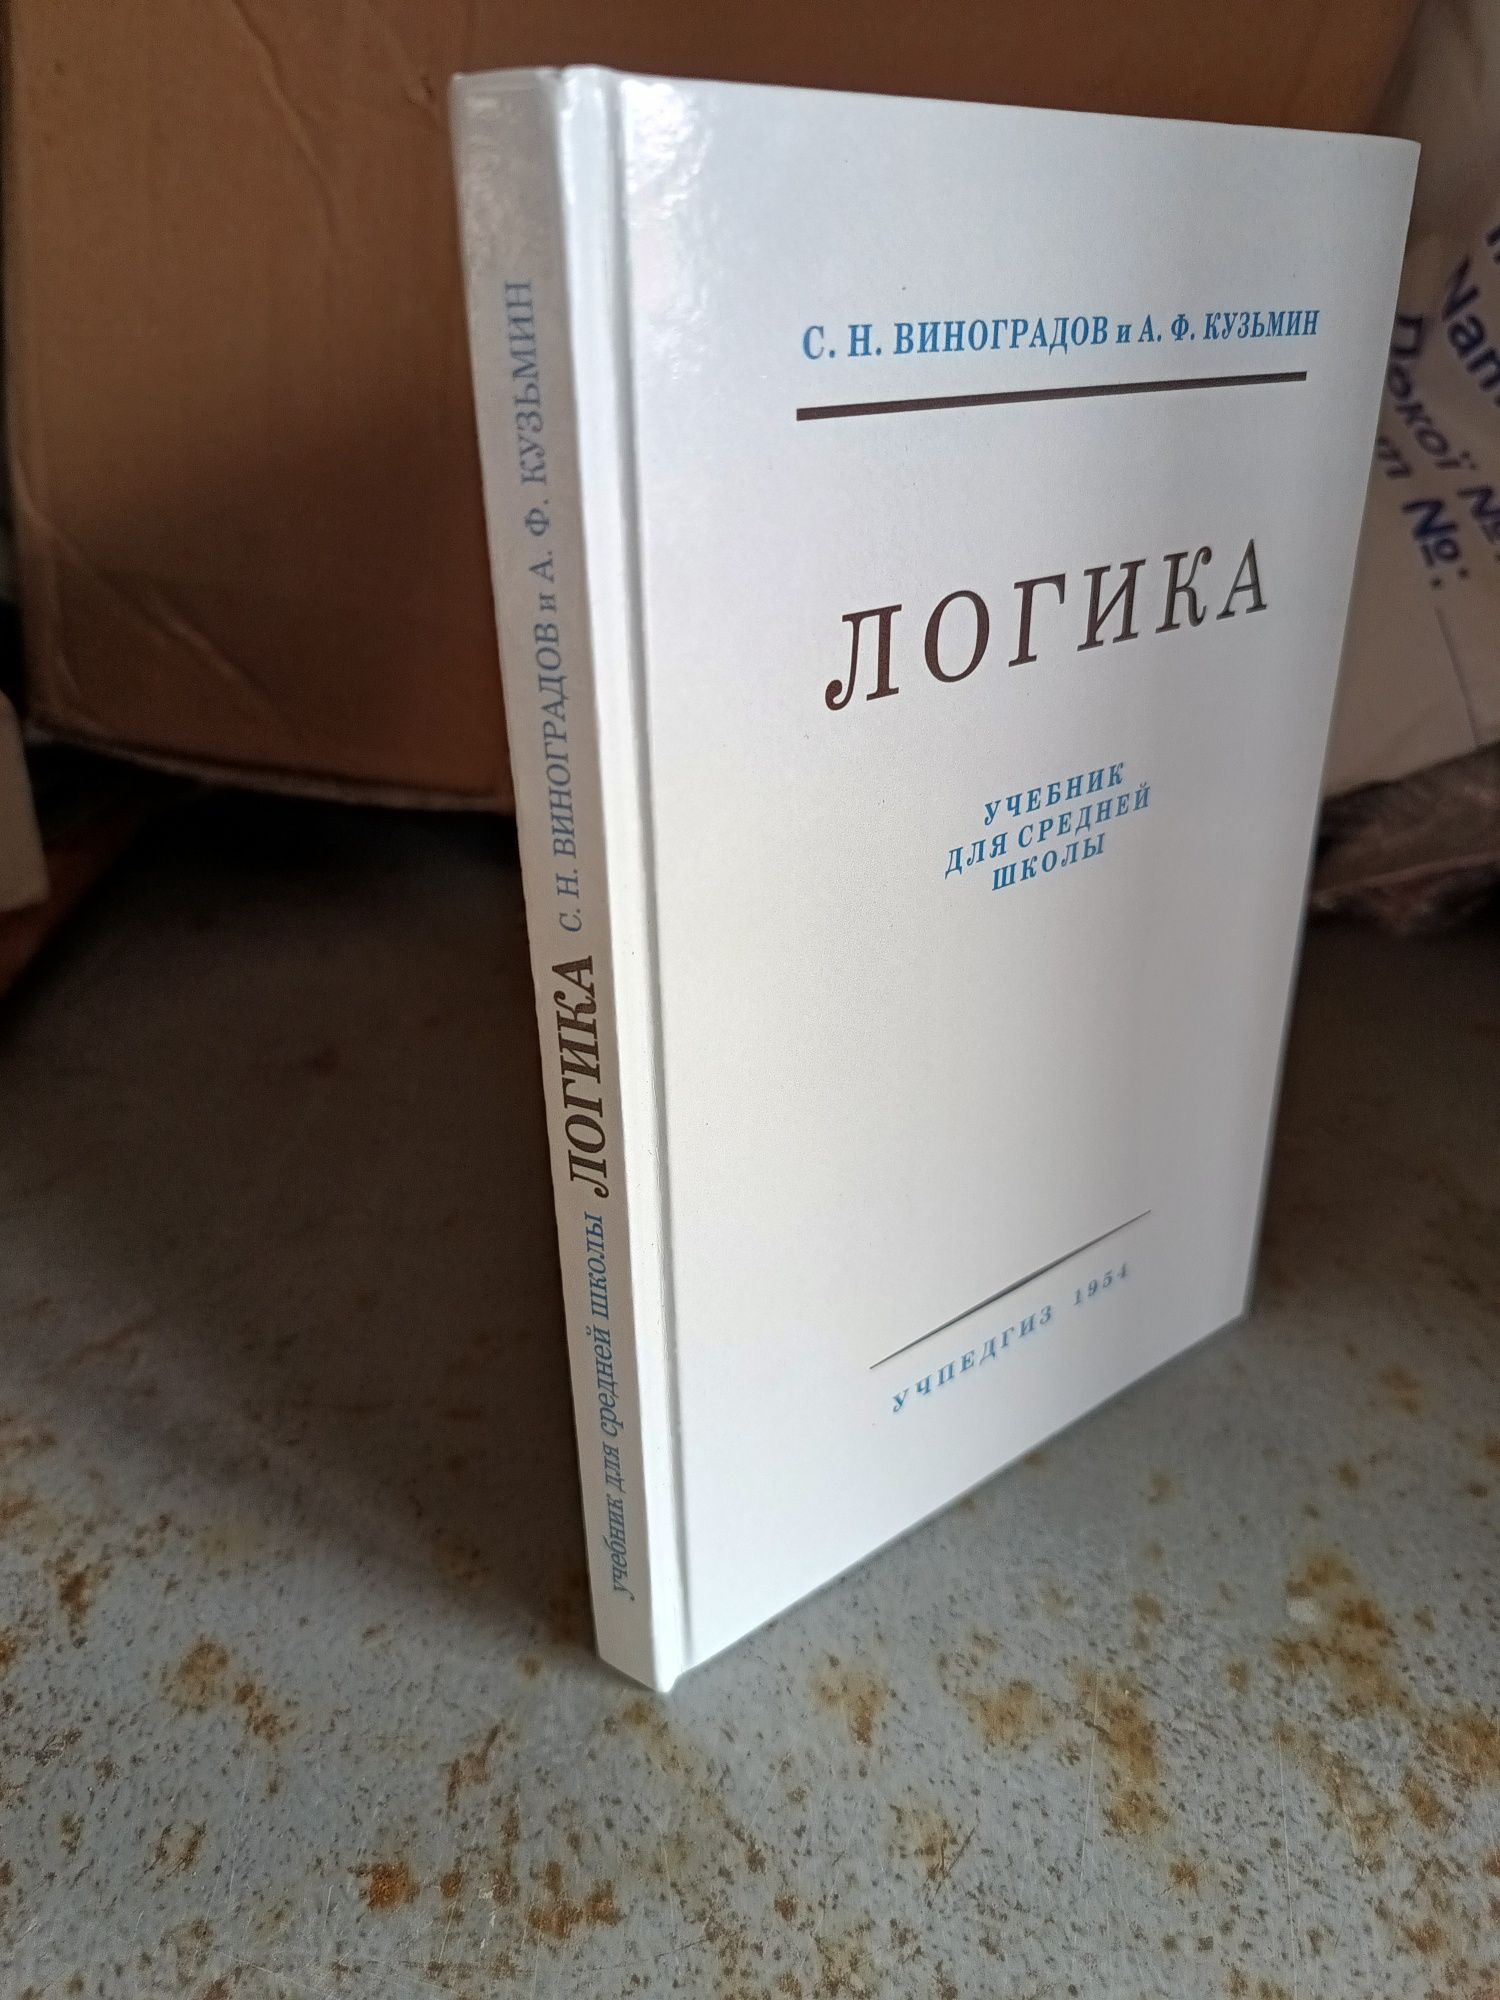 ЛОГИКА, учебник для средней школы, Виноградов, перепечать с 1954 г